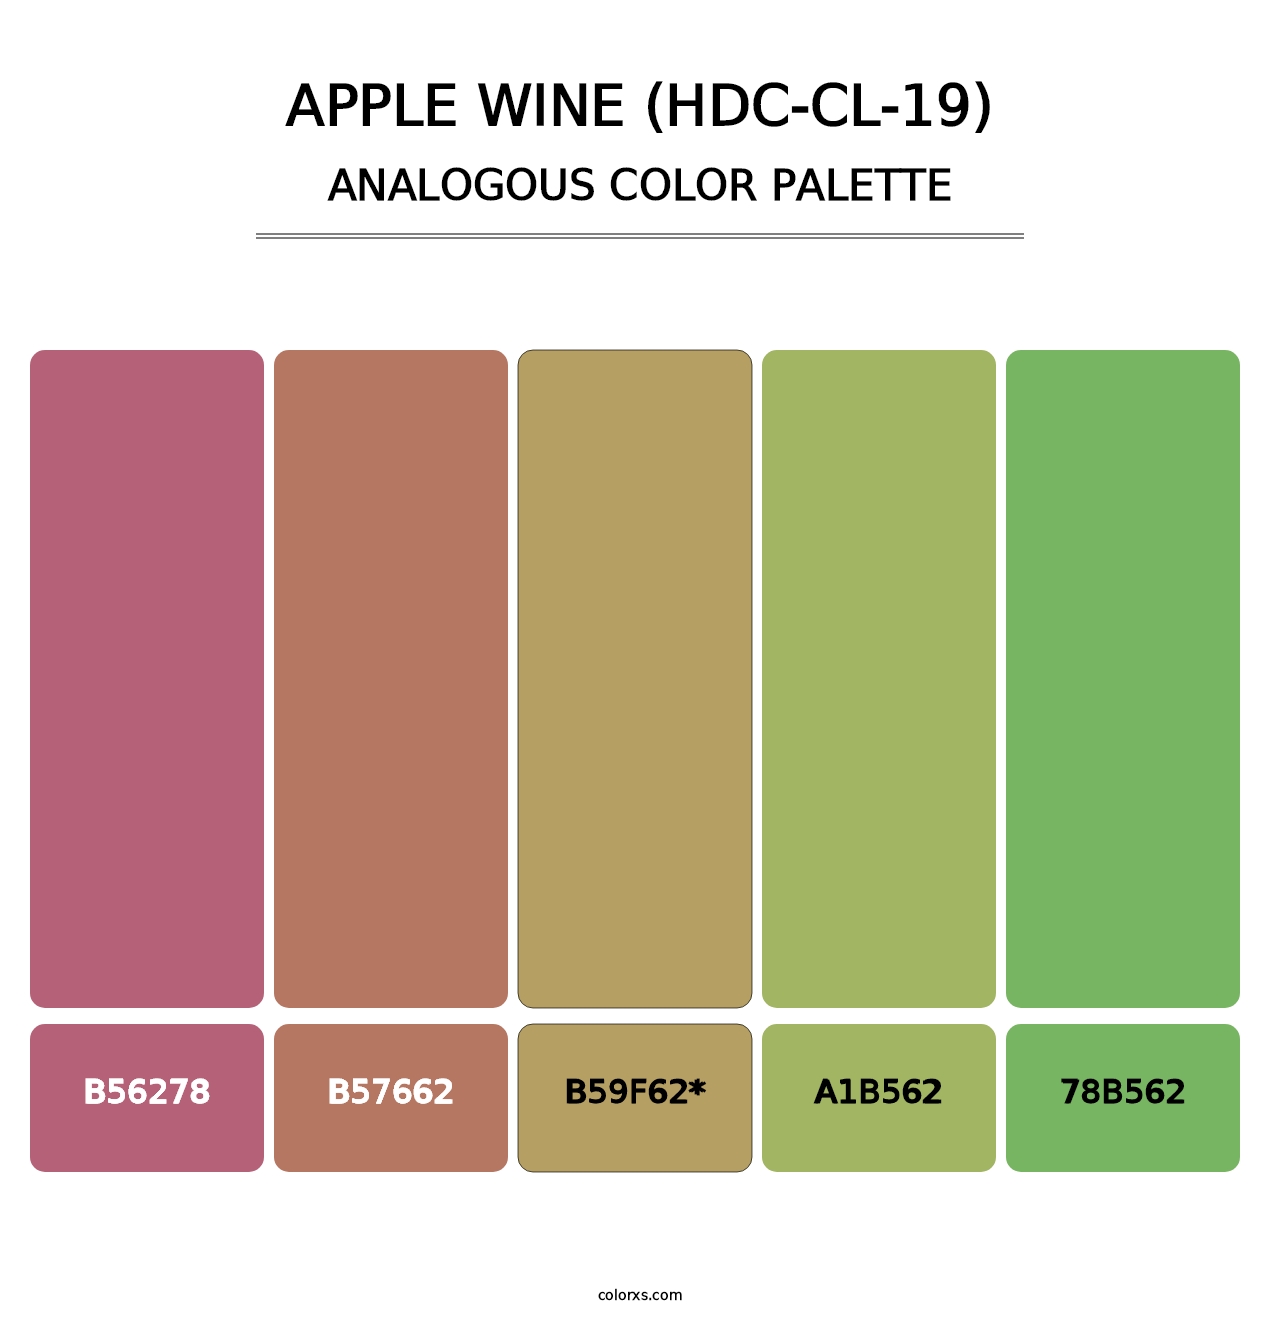 Apple Wine (HDC-CL-19) - Analogous Color Palette